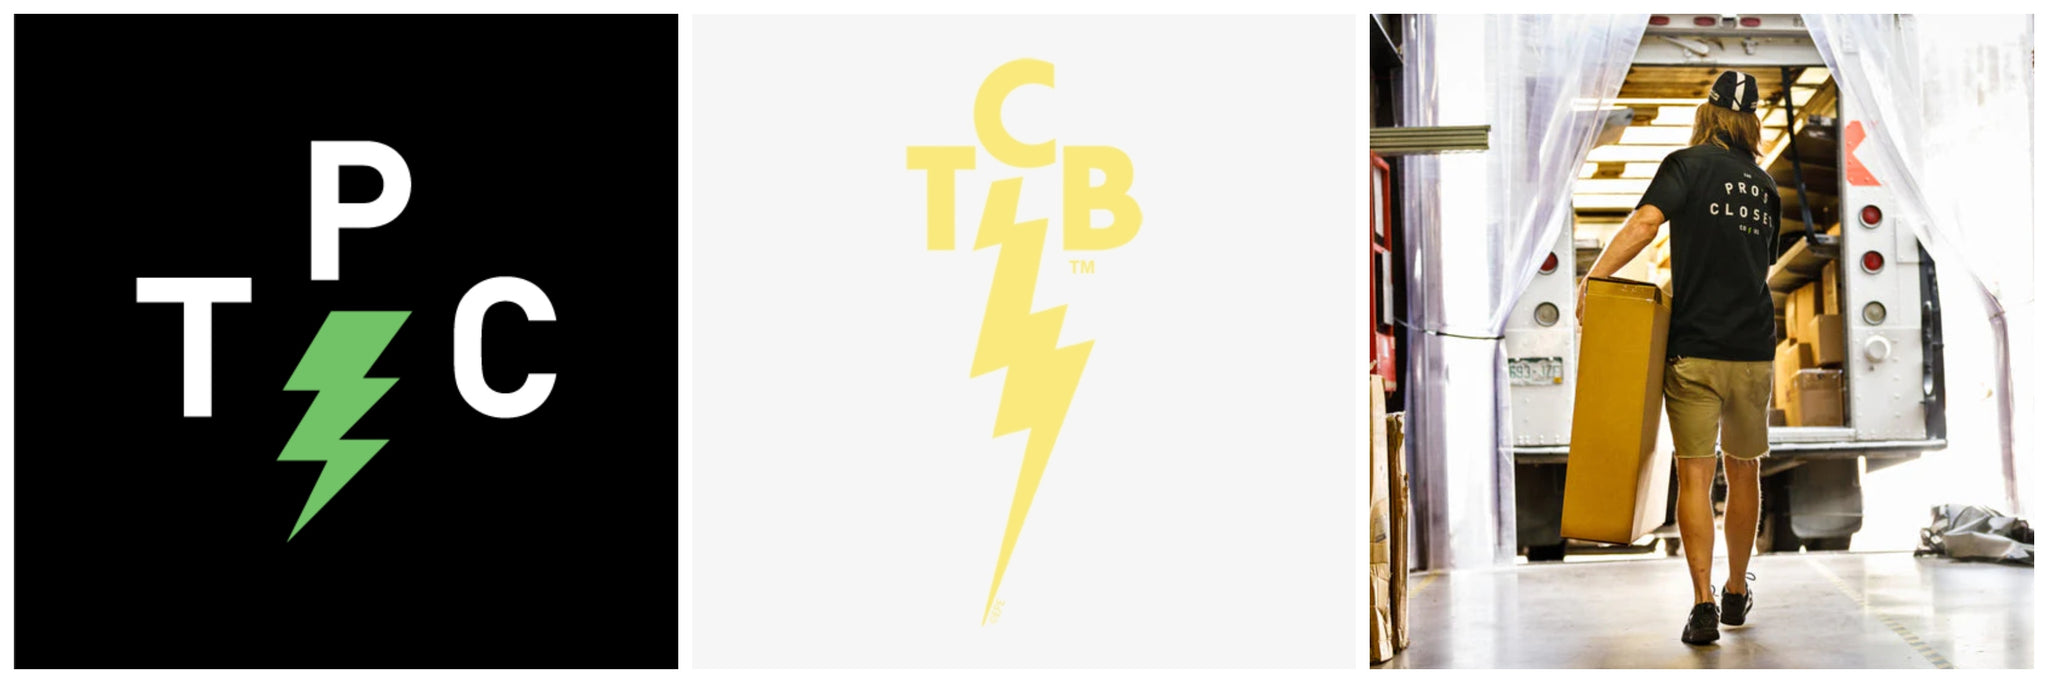 TPC Lighting Bolt logo